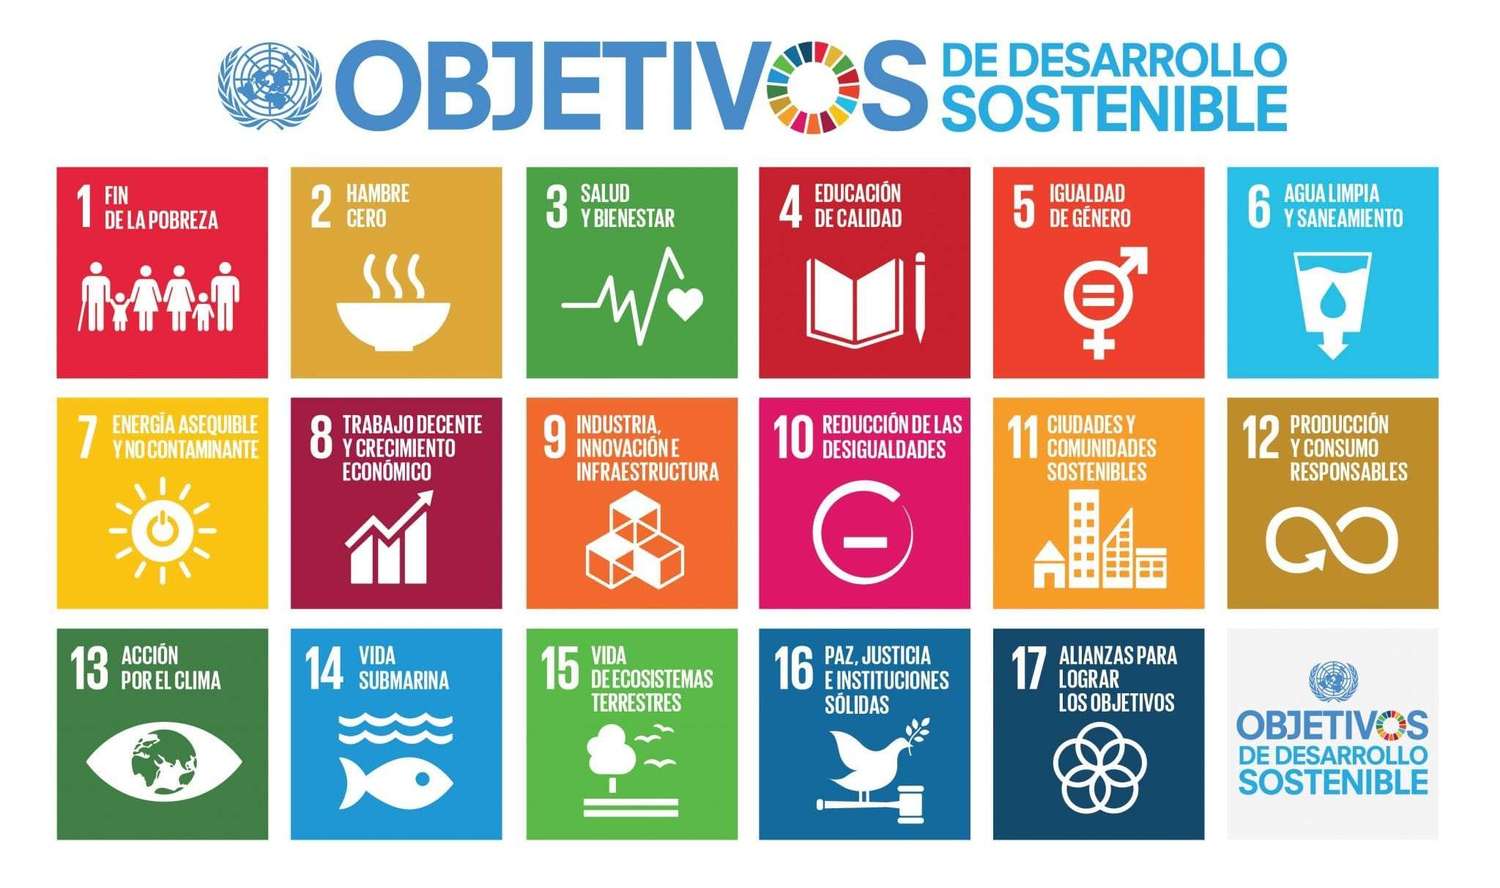 Qué son los Objetivos de Desarrollo Sostenible y cómo las empresas pueden incorporarlos